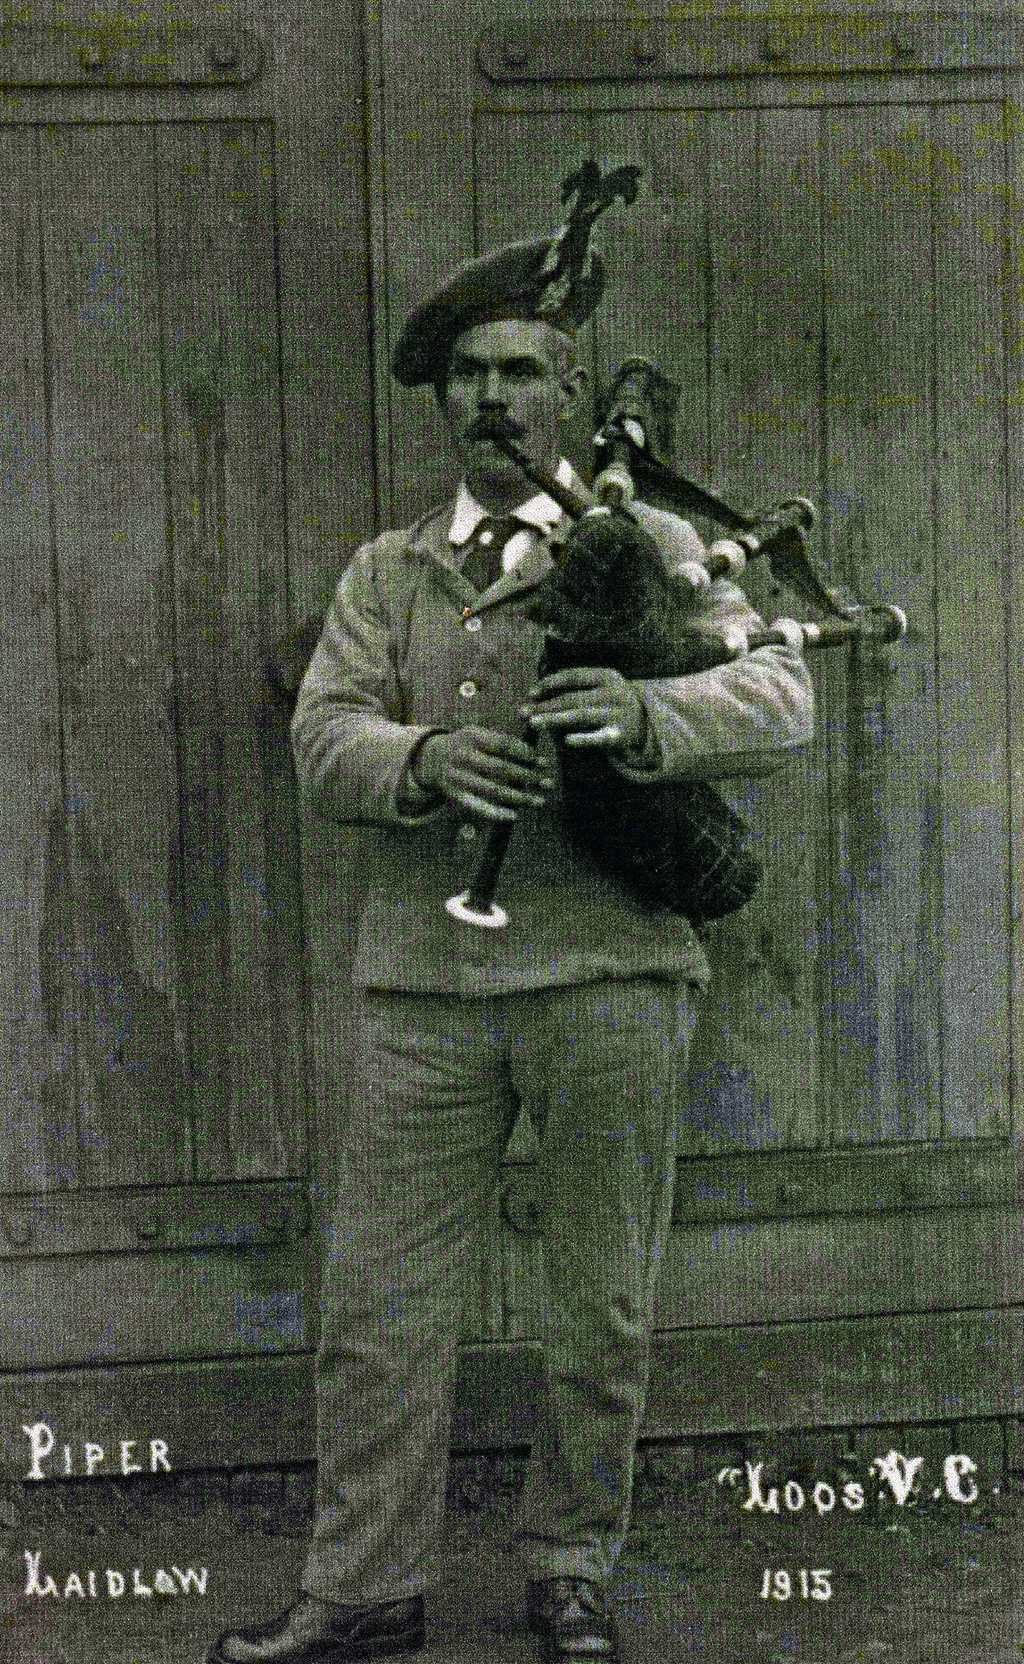 Laidlaw in ‘Hospital Blues’, 1916.